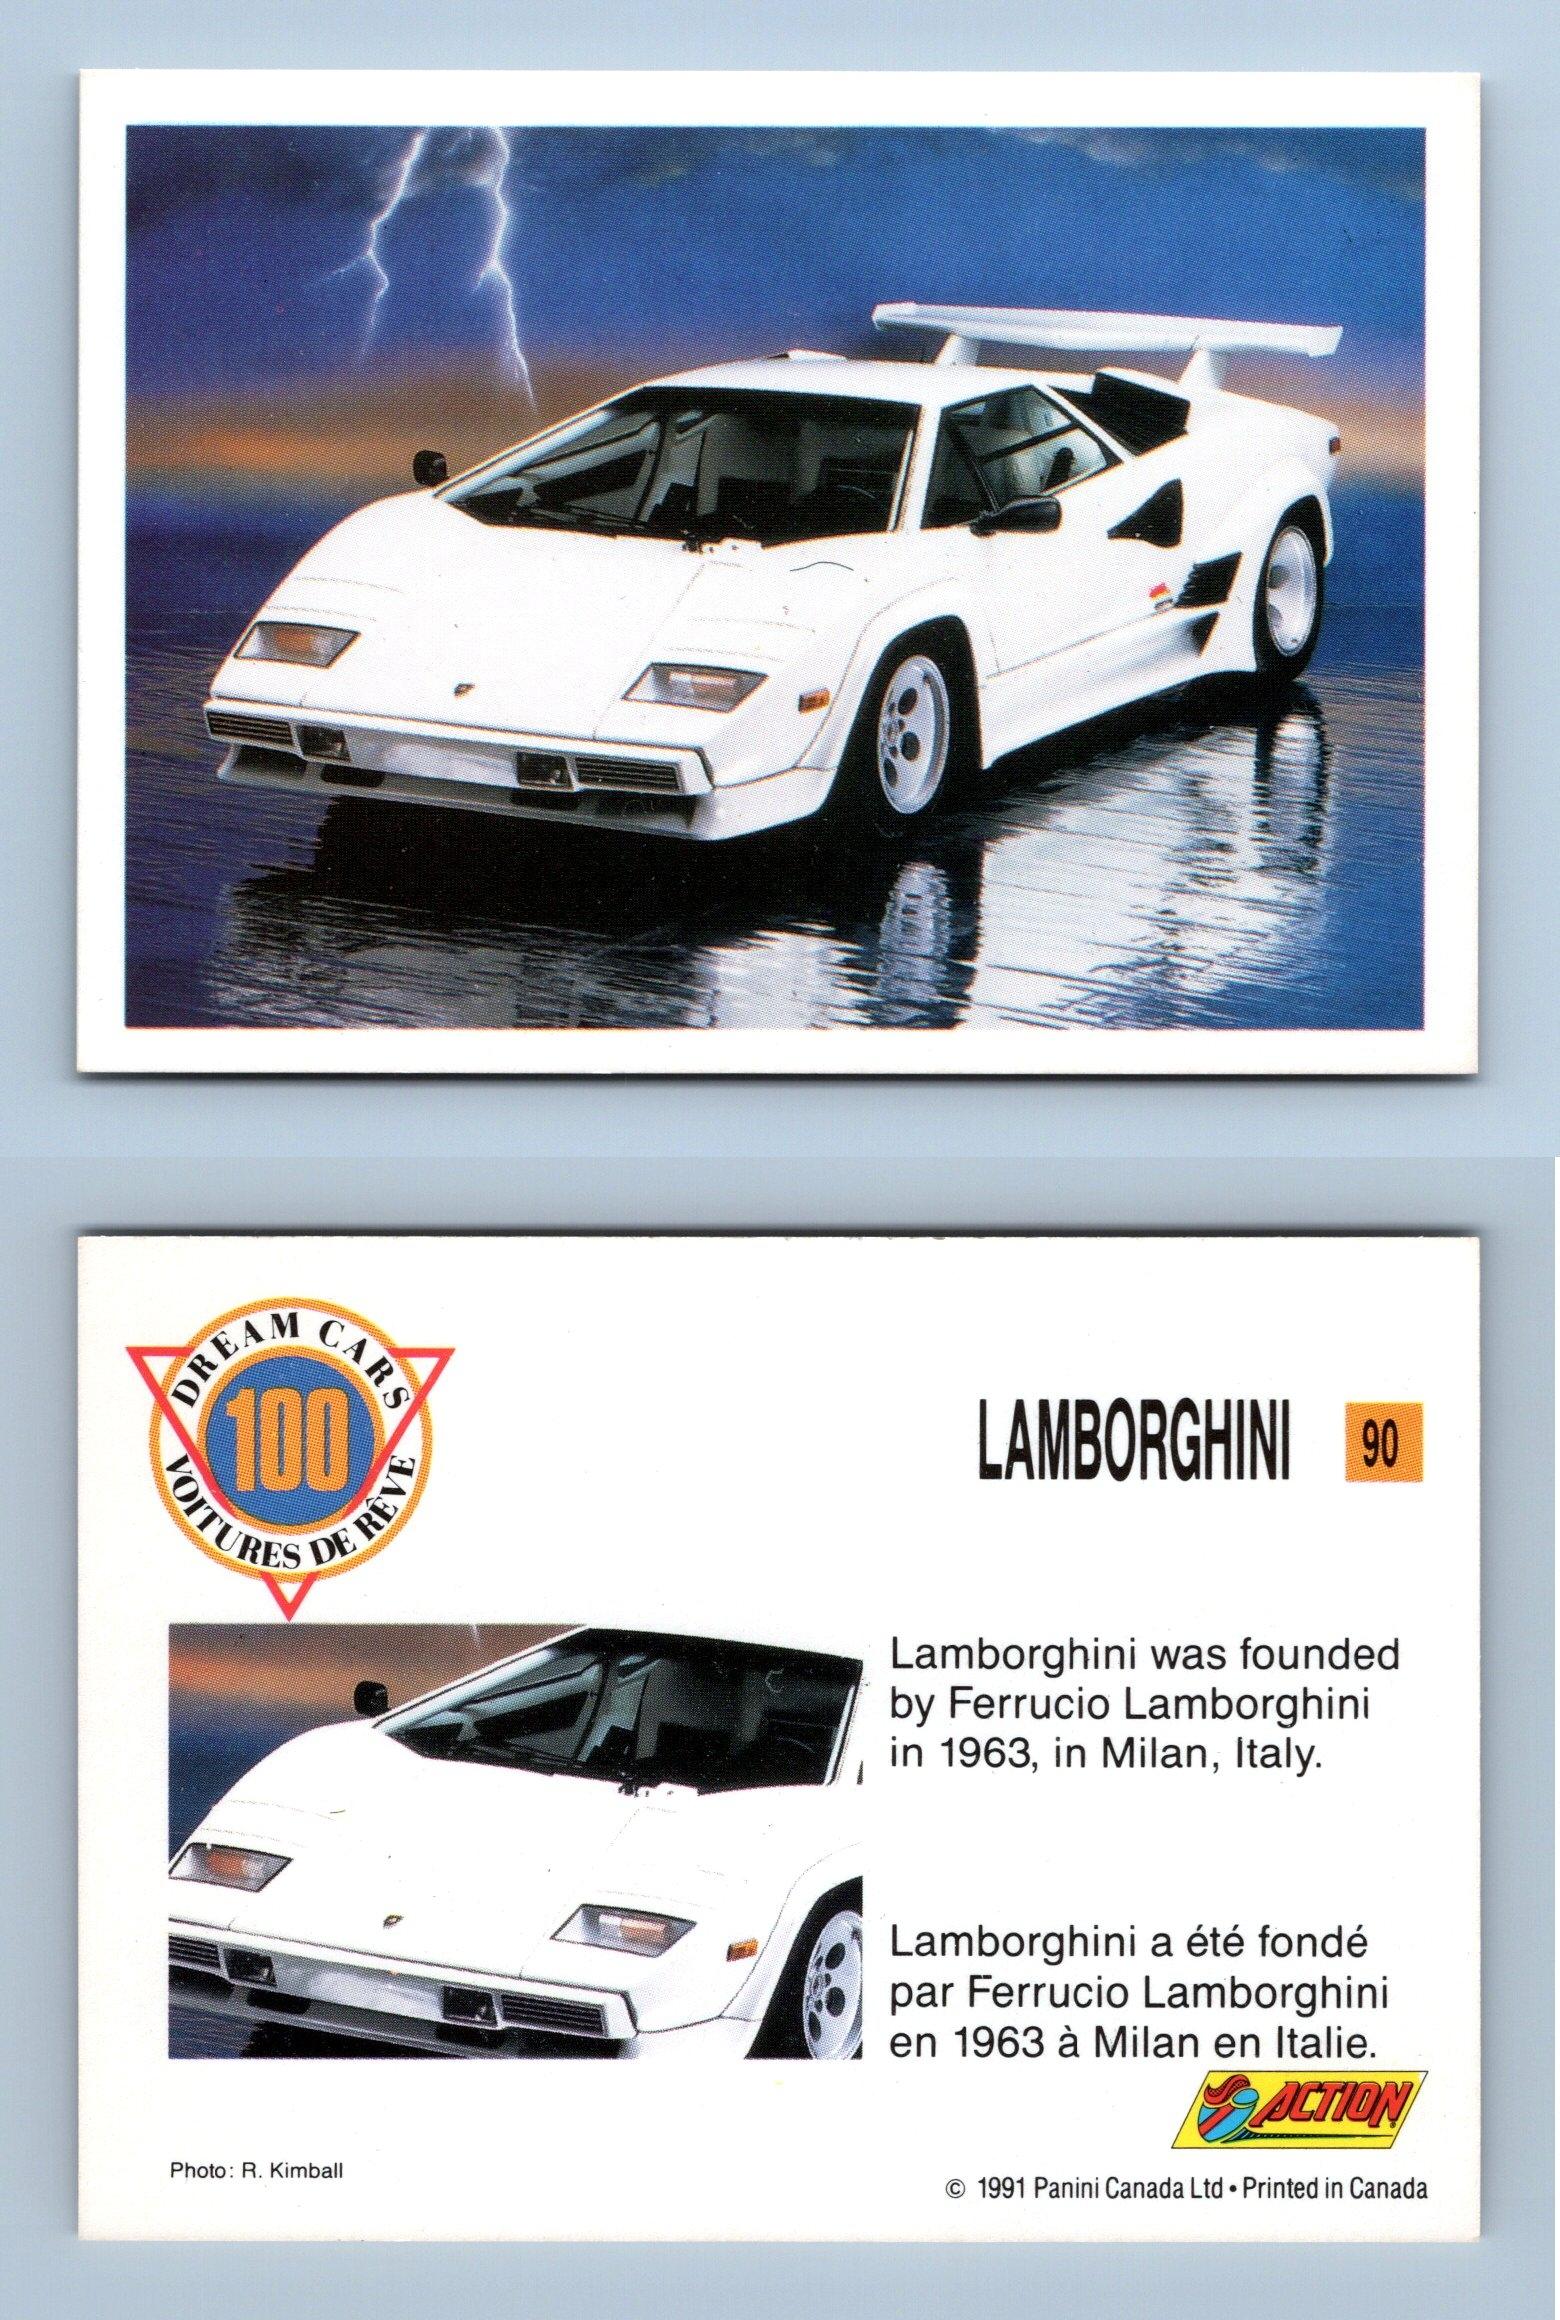 Lamborghini #90 - Dream Cars 1991 Panini Trading Card